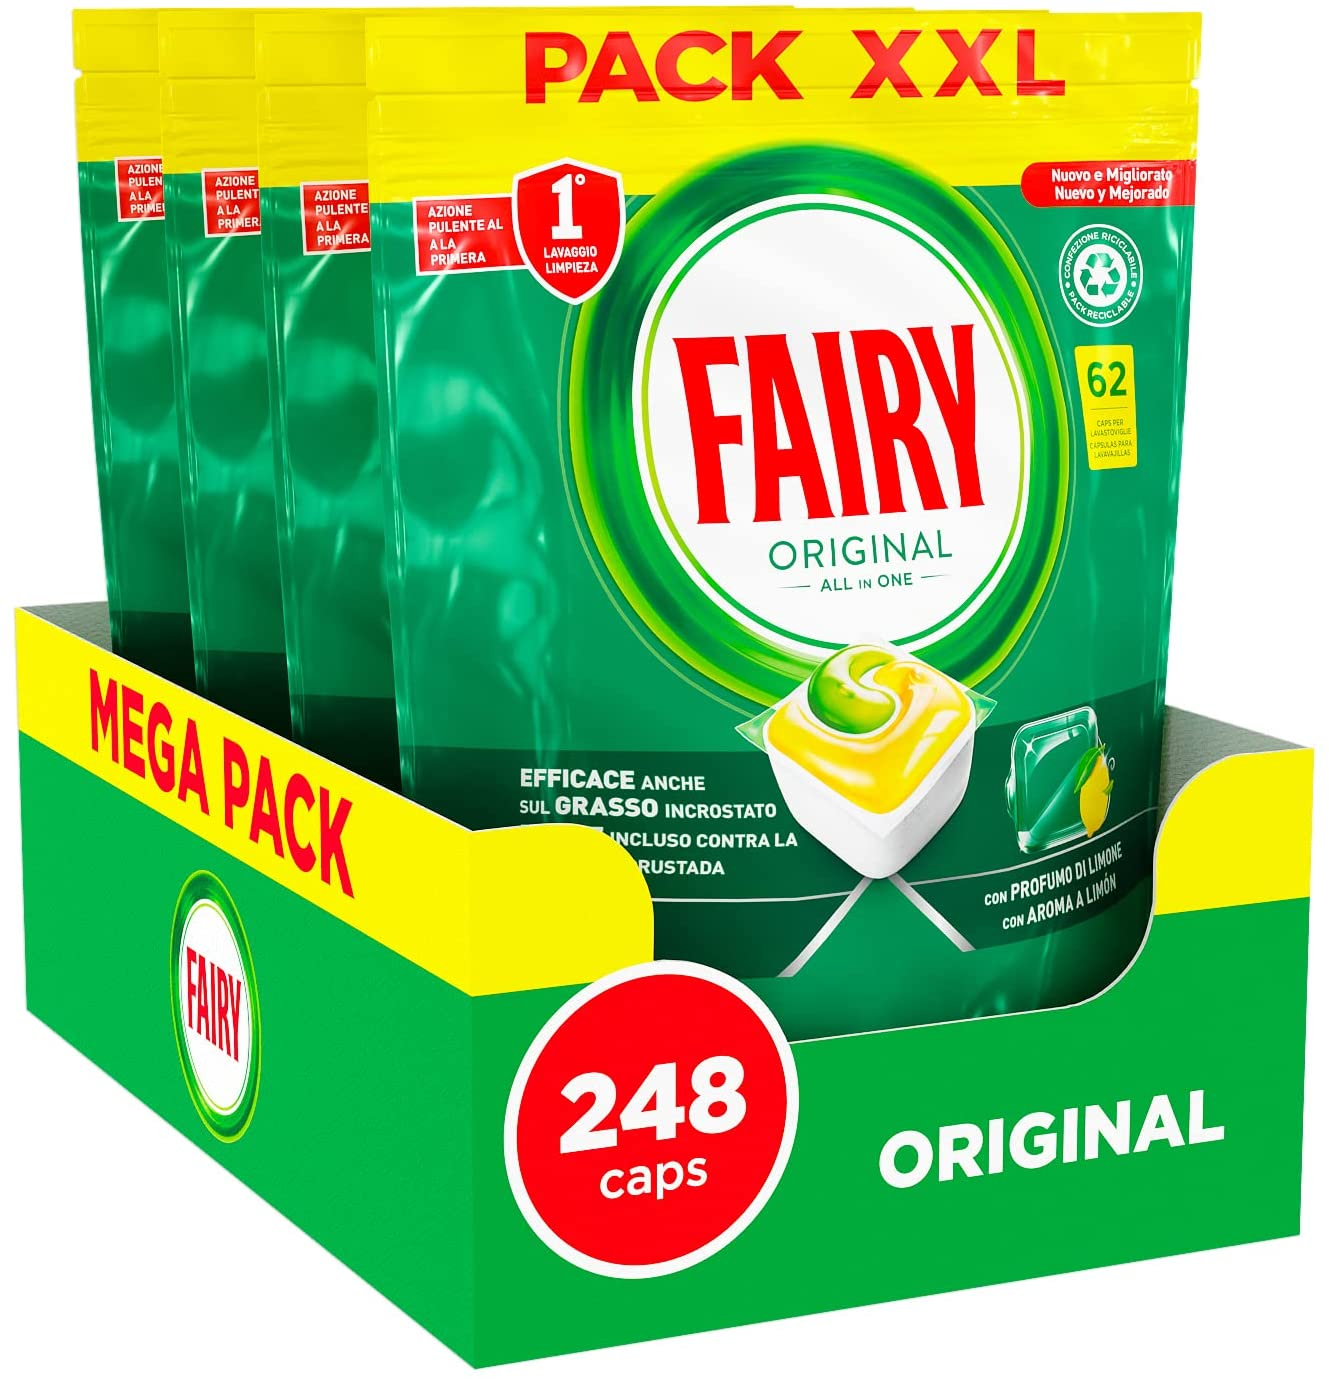 Fairy Original, 248 pastiglie per lavastoviglie SCONTO 18€ su Amazon